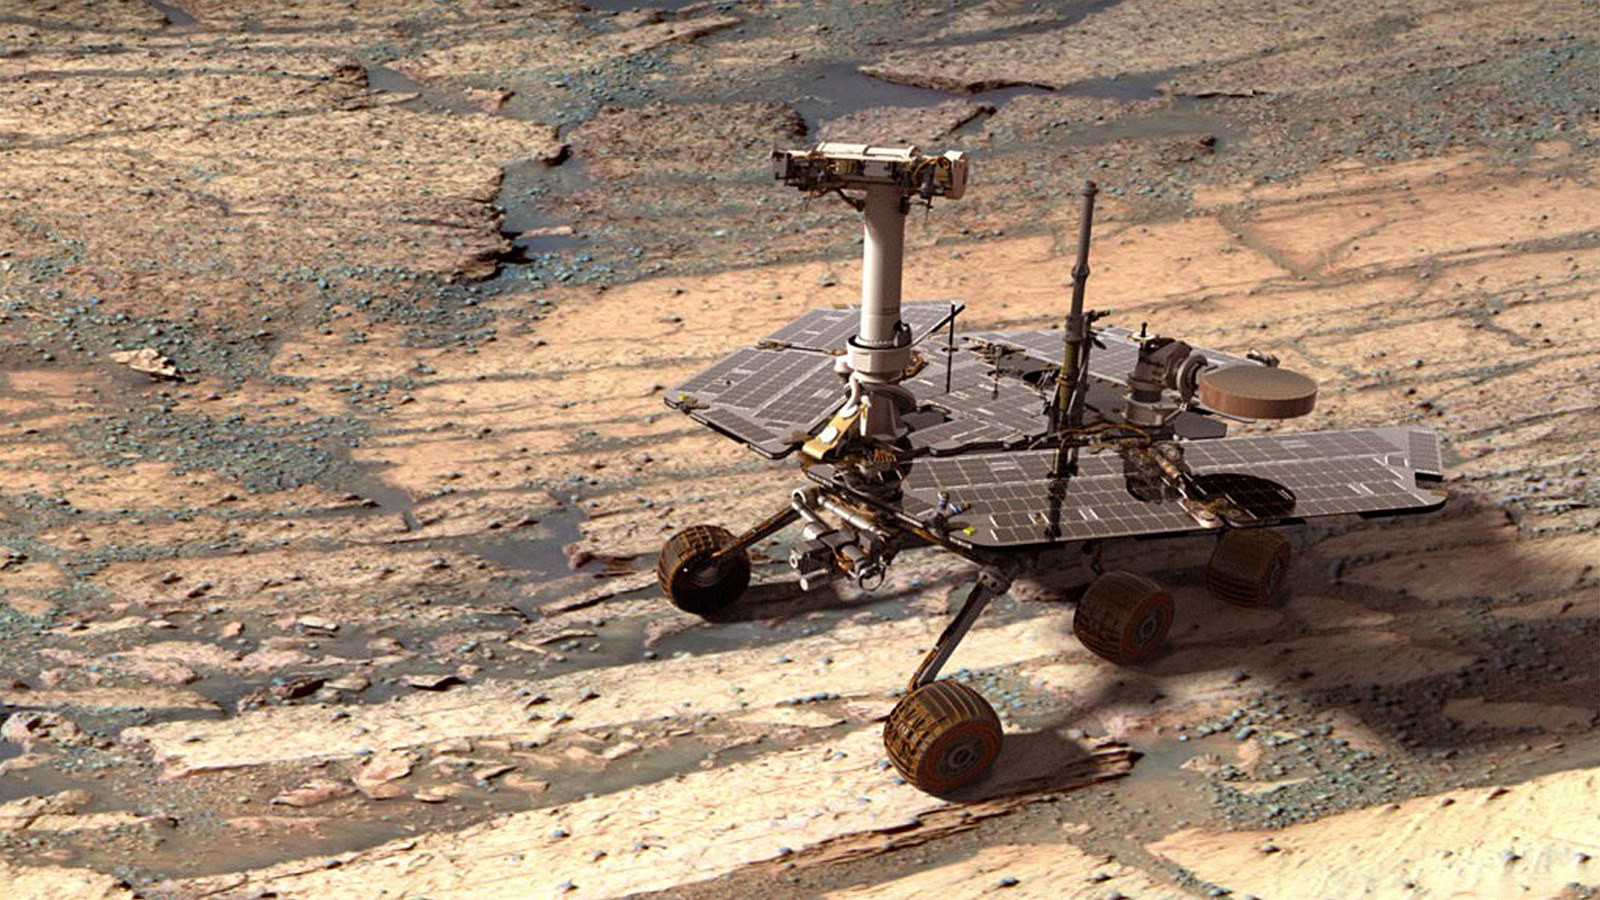 Opportunity sa preháňa po povrchu Marsu od roku 2004. Za ten čas stihlo najazdiť vyše 35 kilometrov